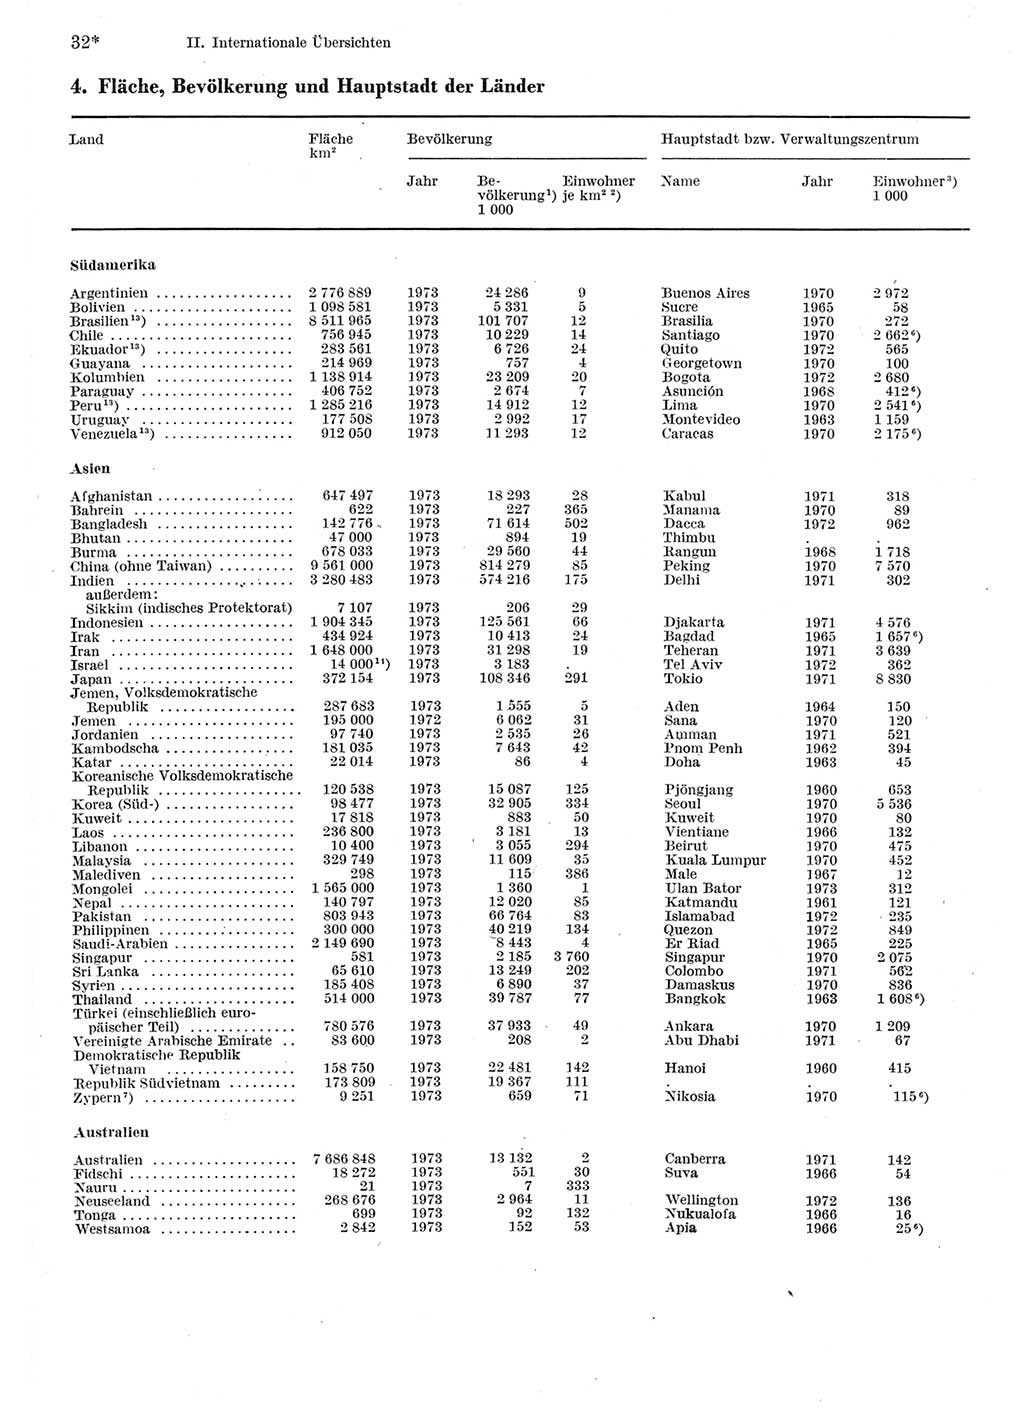 Statistisches Jahrbuch der Deutschen Demokratischen Republik (DDR) 1975, Seite 32 (Stat. Jb. DDR 1975, S. 32)